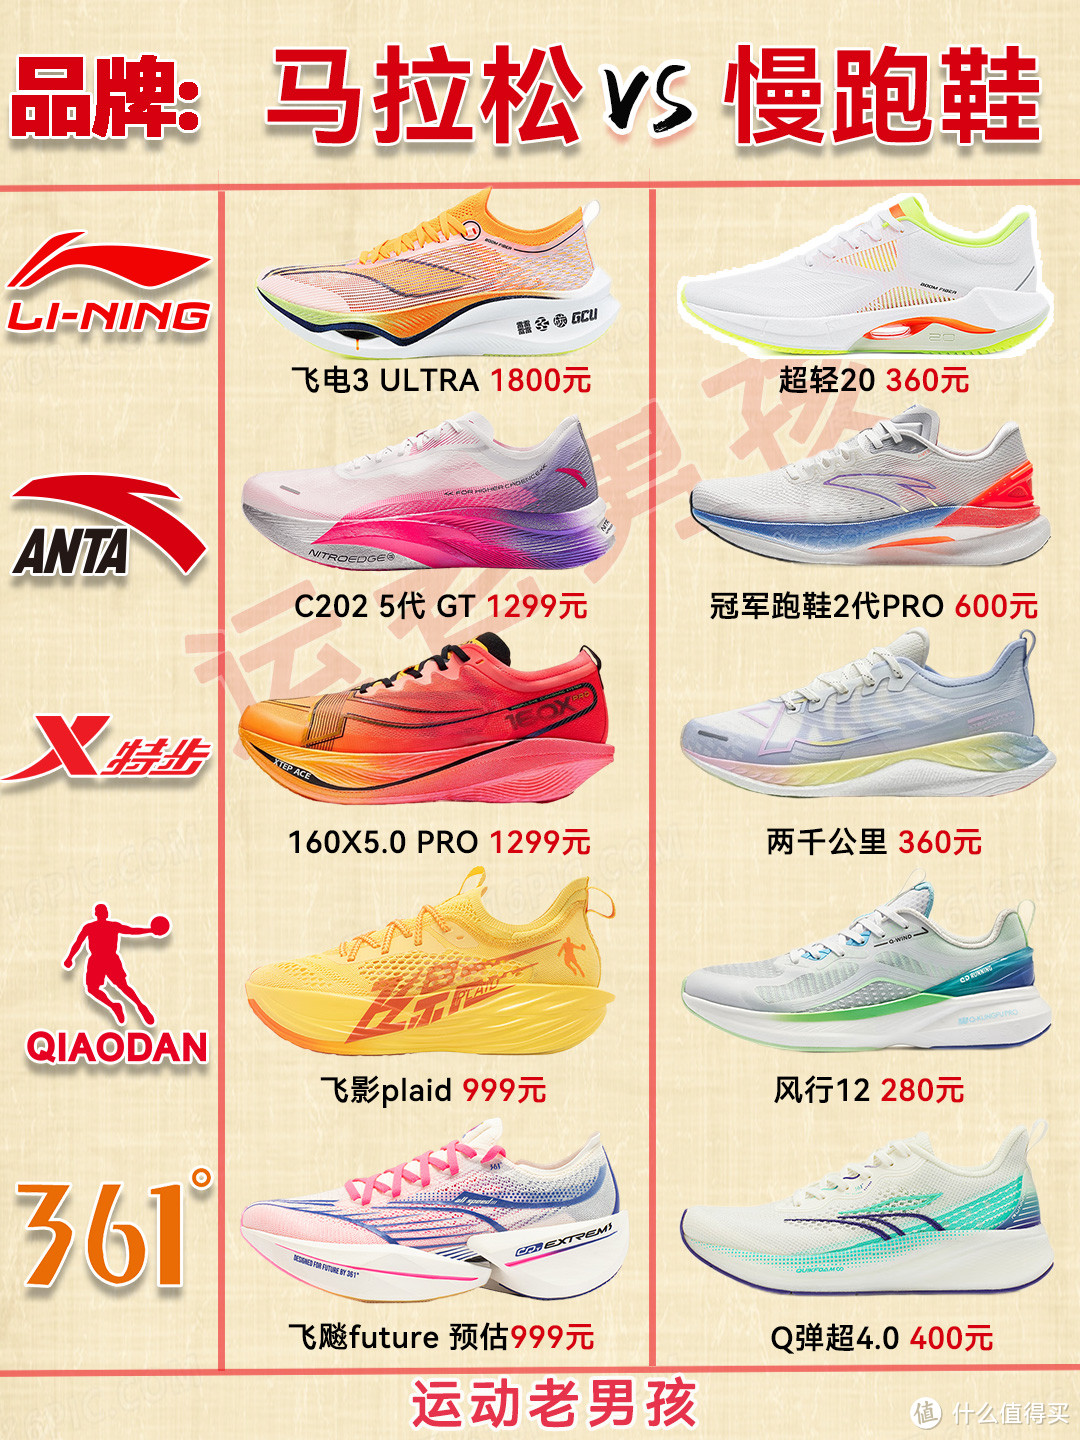 慢跑鞋和马拉松跑鞋有何区别？大众如何选择适合自己跑鞋？